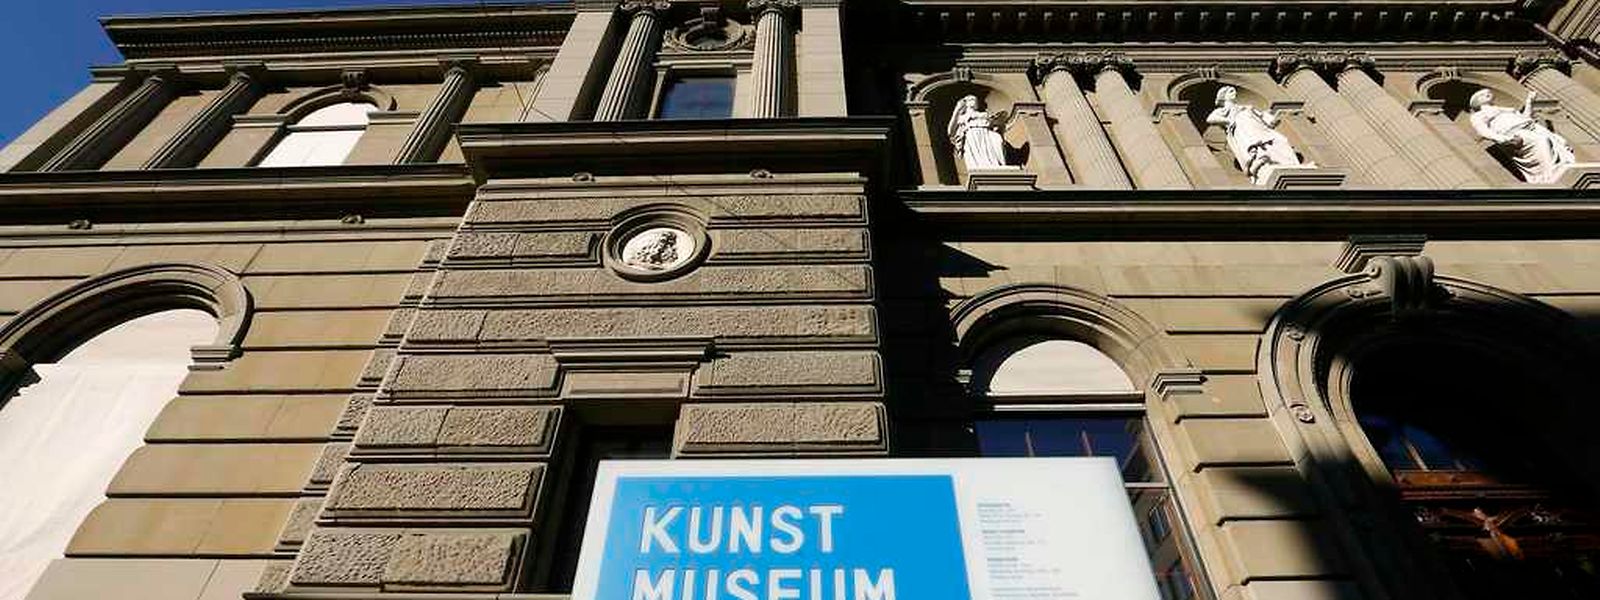 Das Kunstmuseum Bern wurde von Cornelius Gurlitt als Alleinerbe eingesetzt.